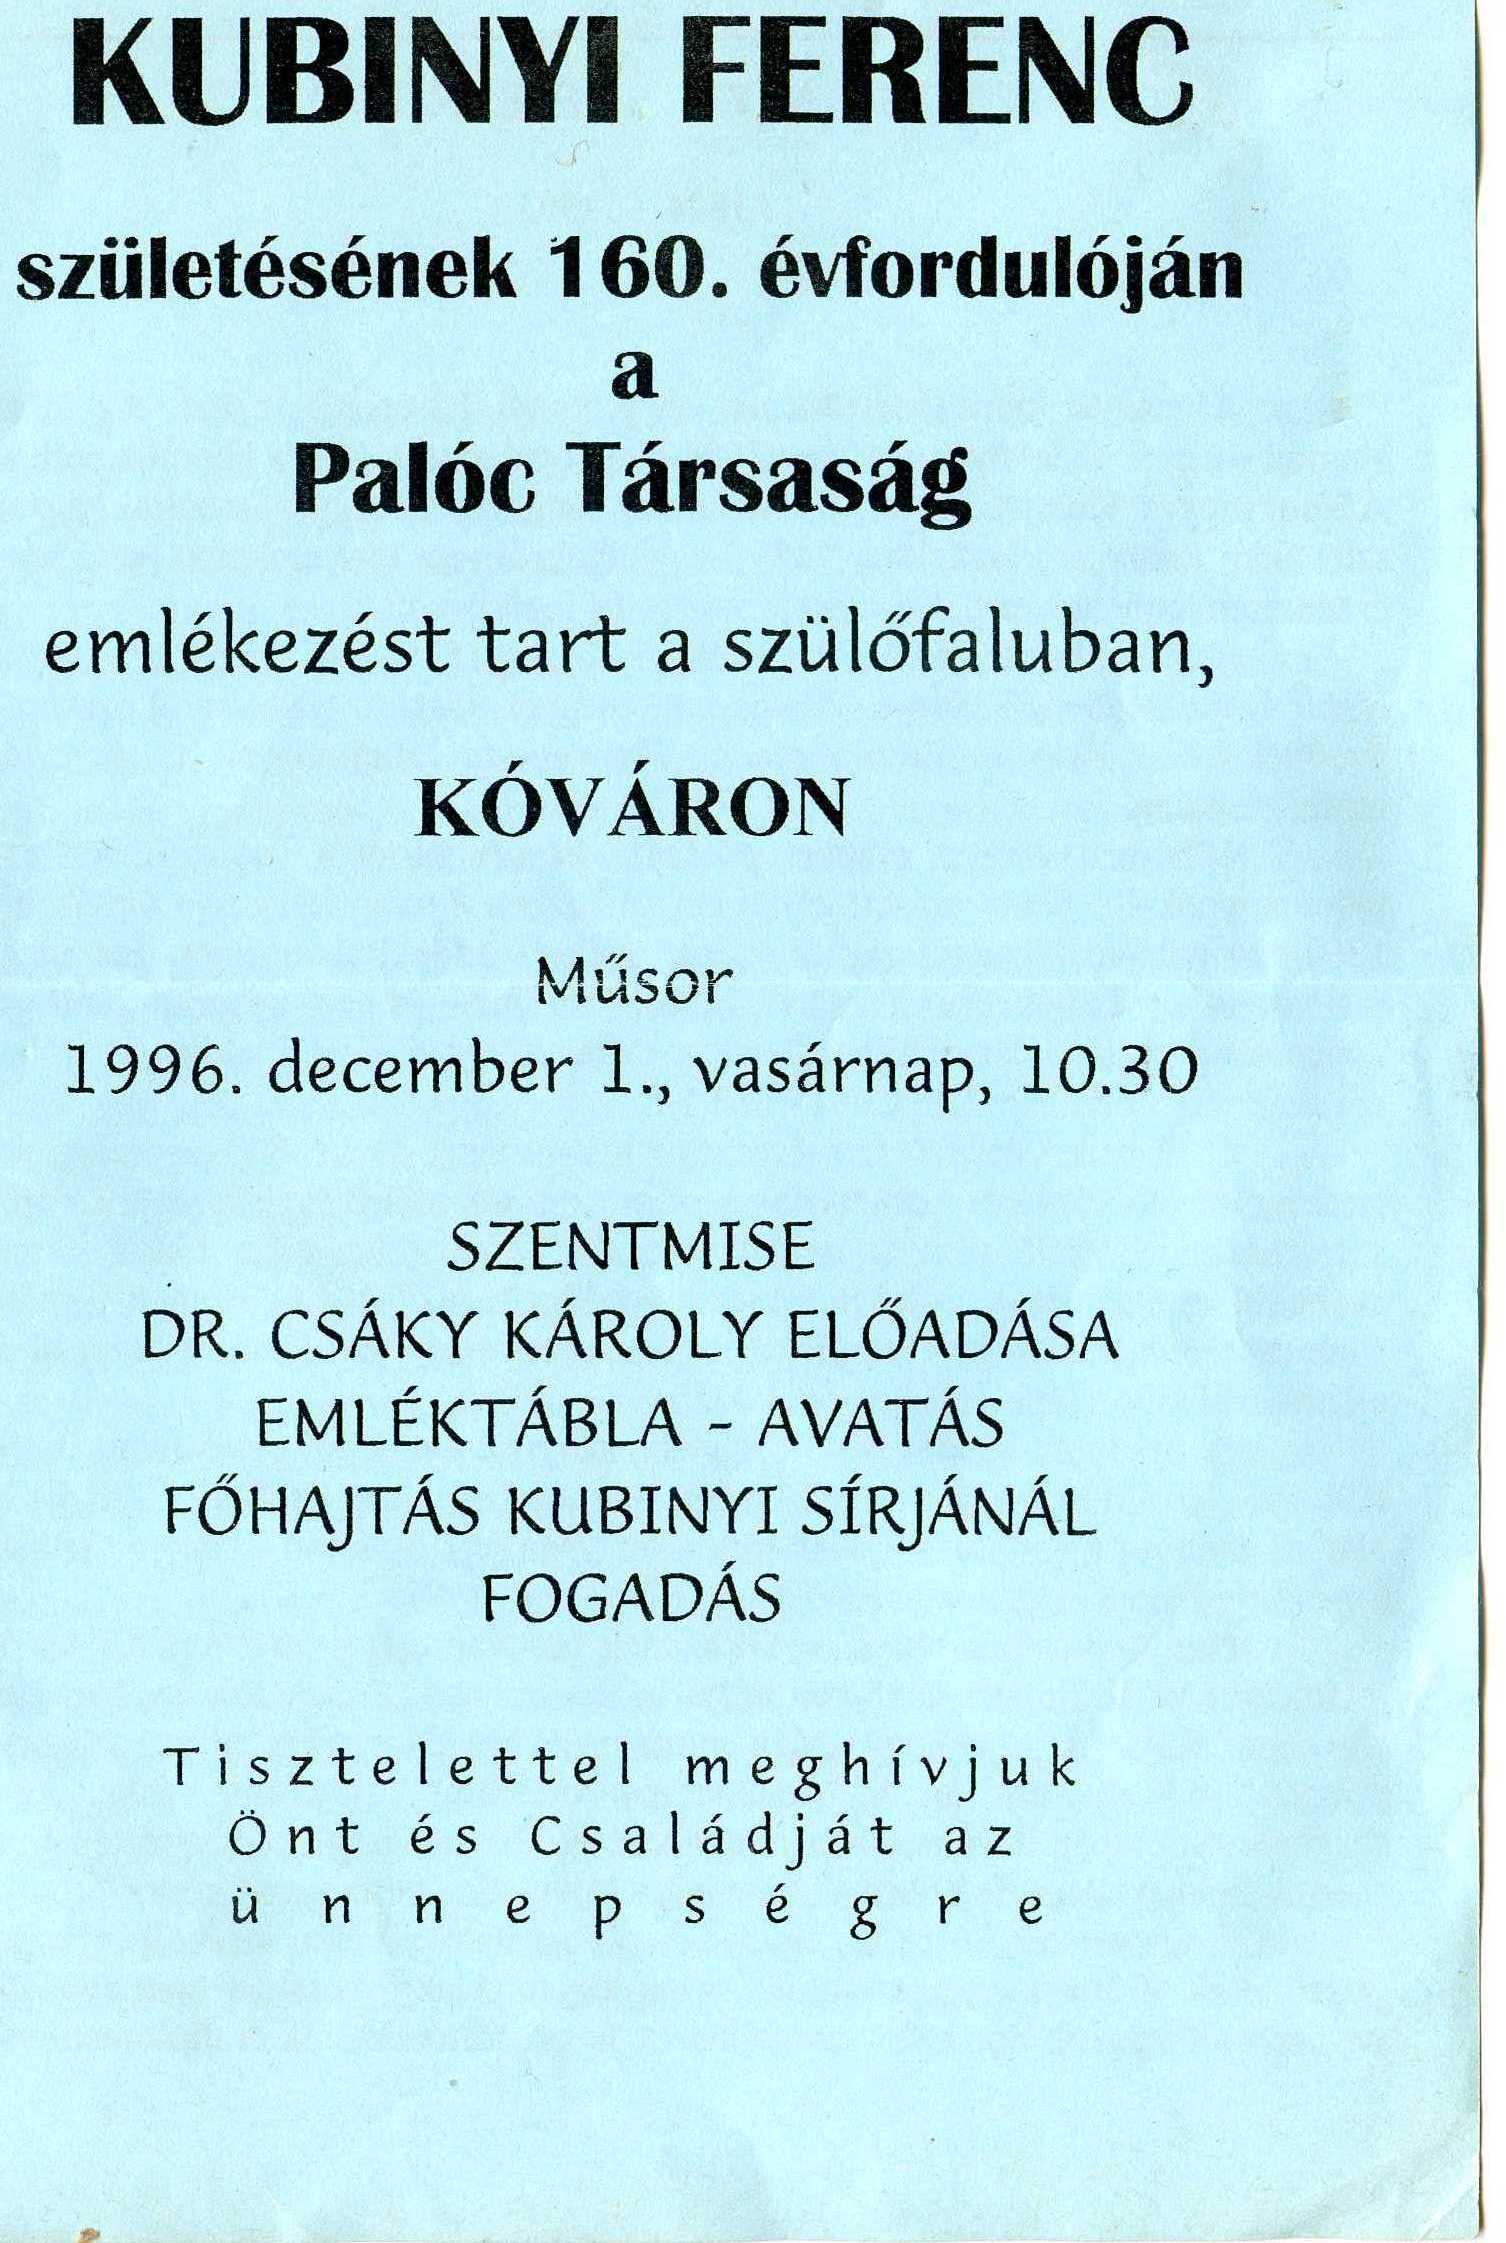 Az egyik Kubinyi-ünnepség dokumentuma Csáky Károly reprodukcióján